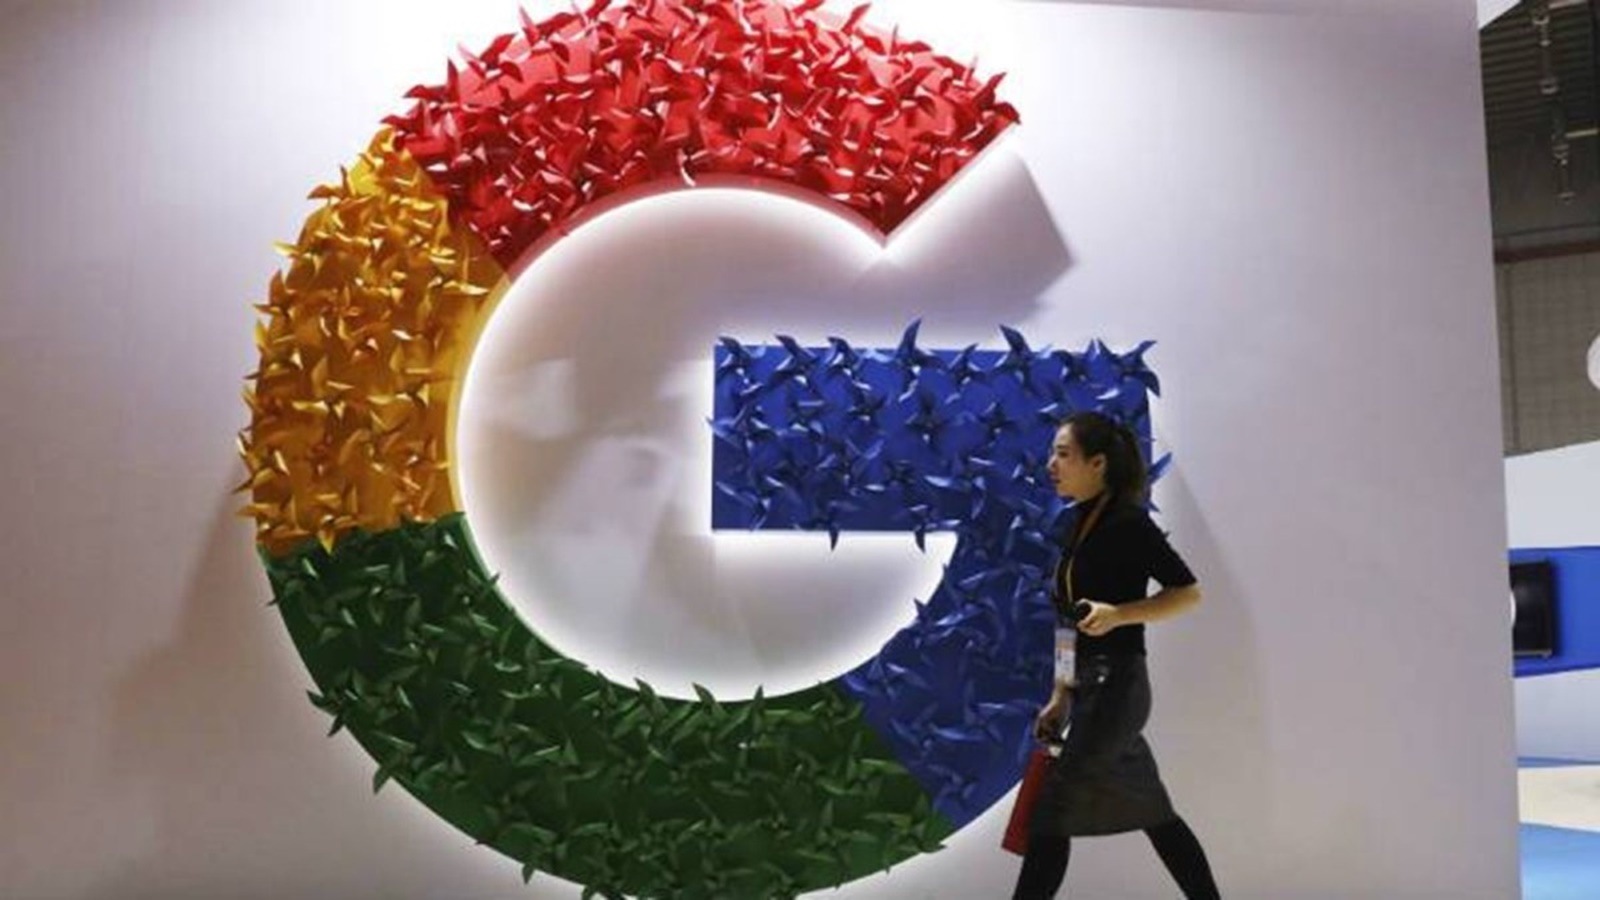 Le régulateur français inflige une amende de 272 millions de dollars à Google dans le cadre d’un litige avec un éditeur de presse |  Actualités technologiques